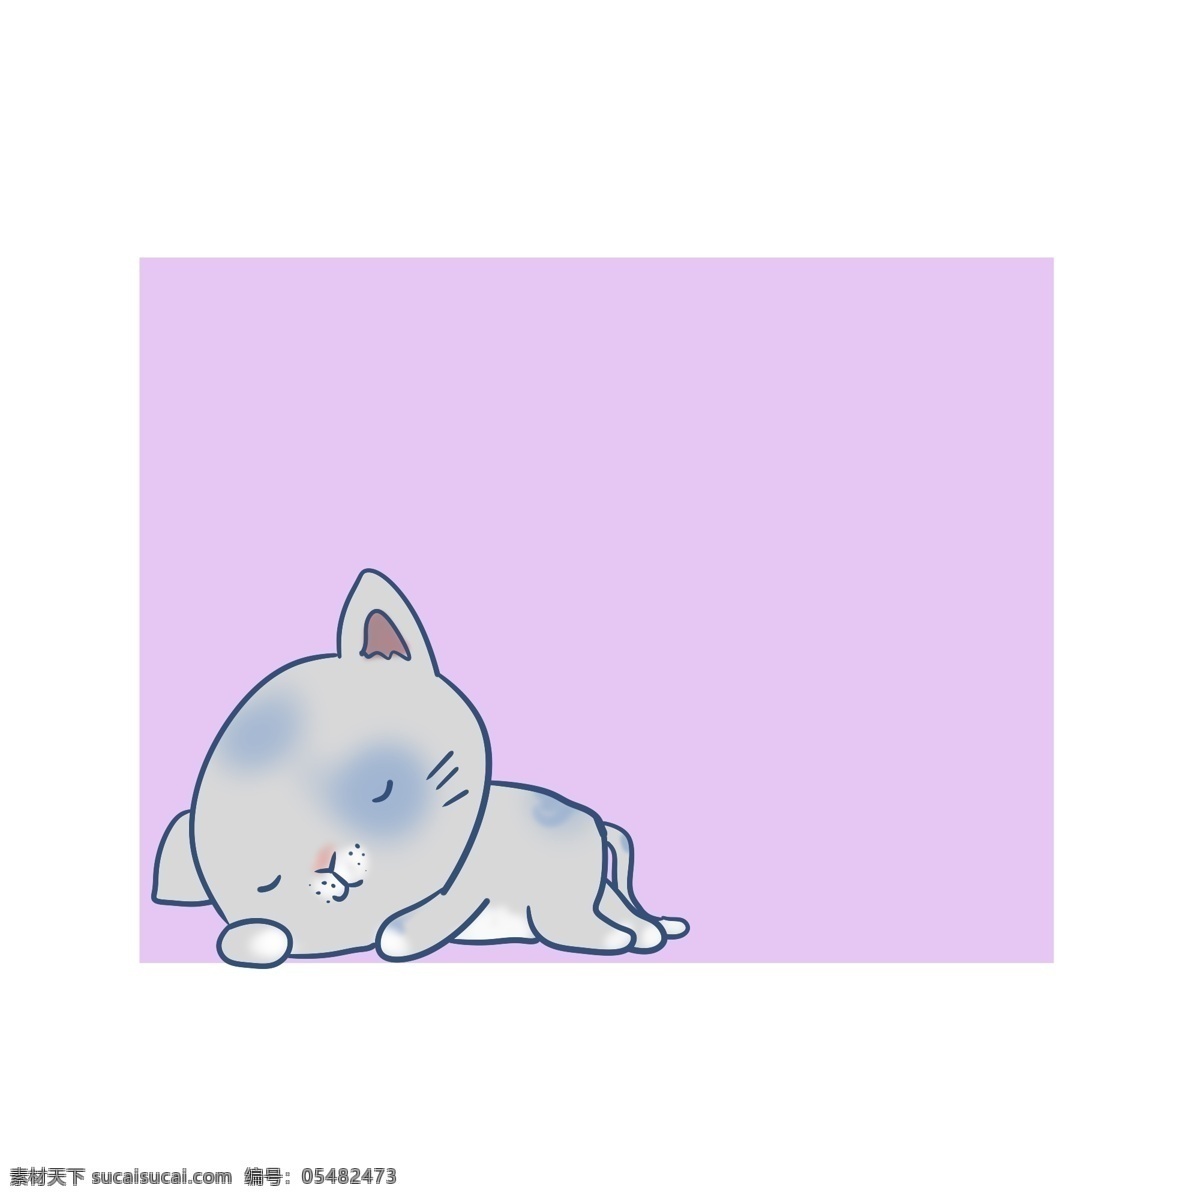 温馨 提示 小猫 边框 温馨提示边框 紫色边框 小猫咪边框 小动物边框 警示 标牌 卡通边框插画